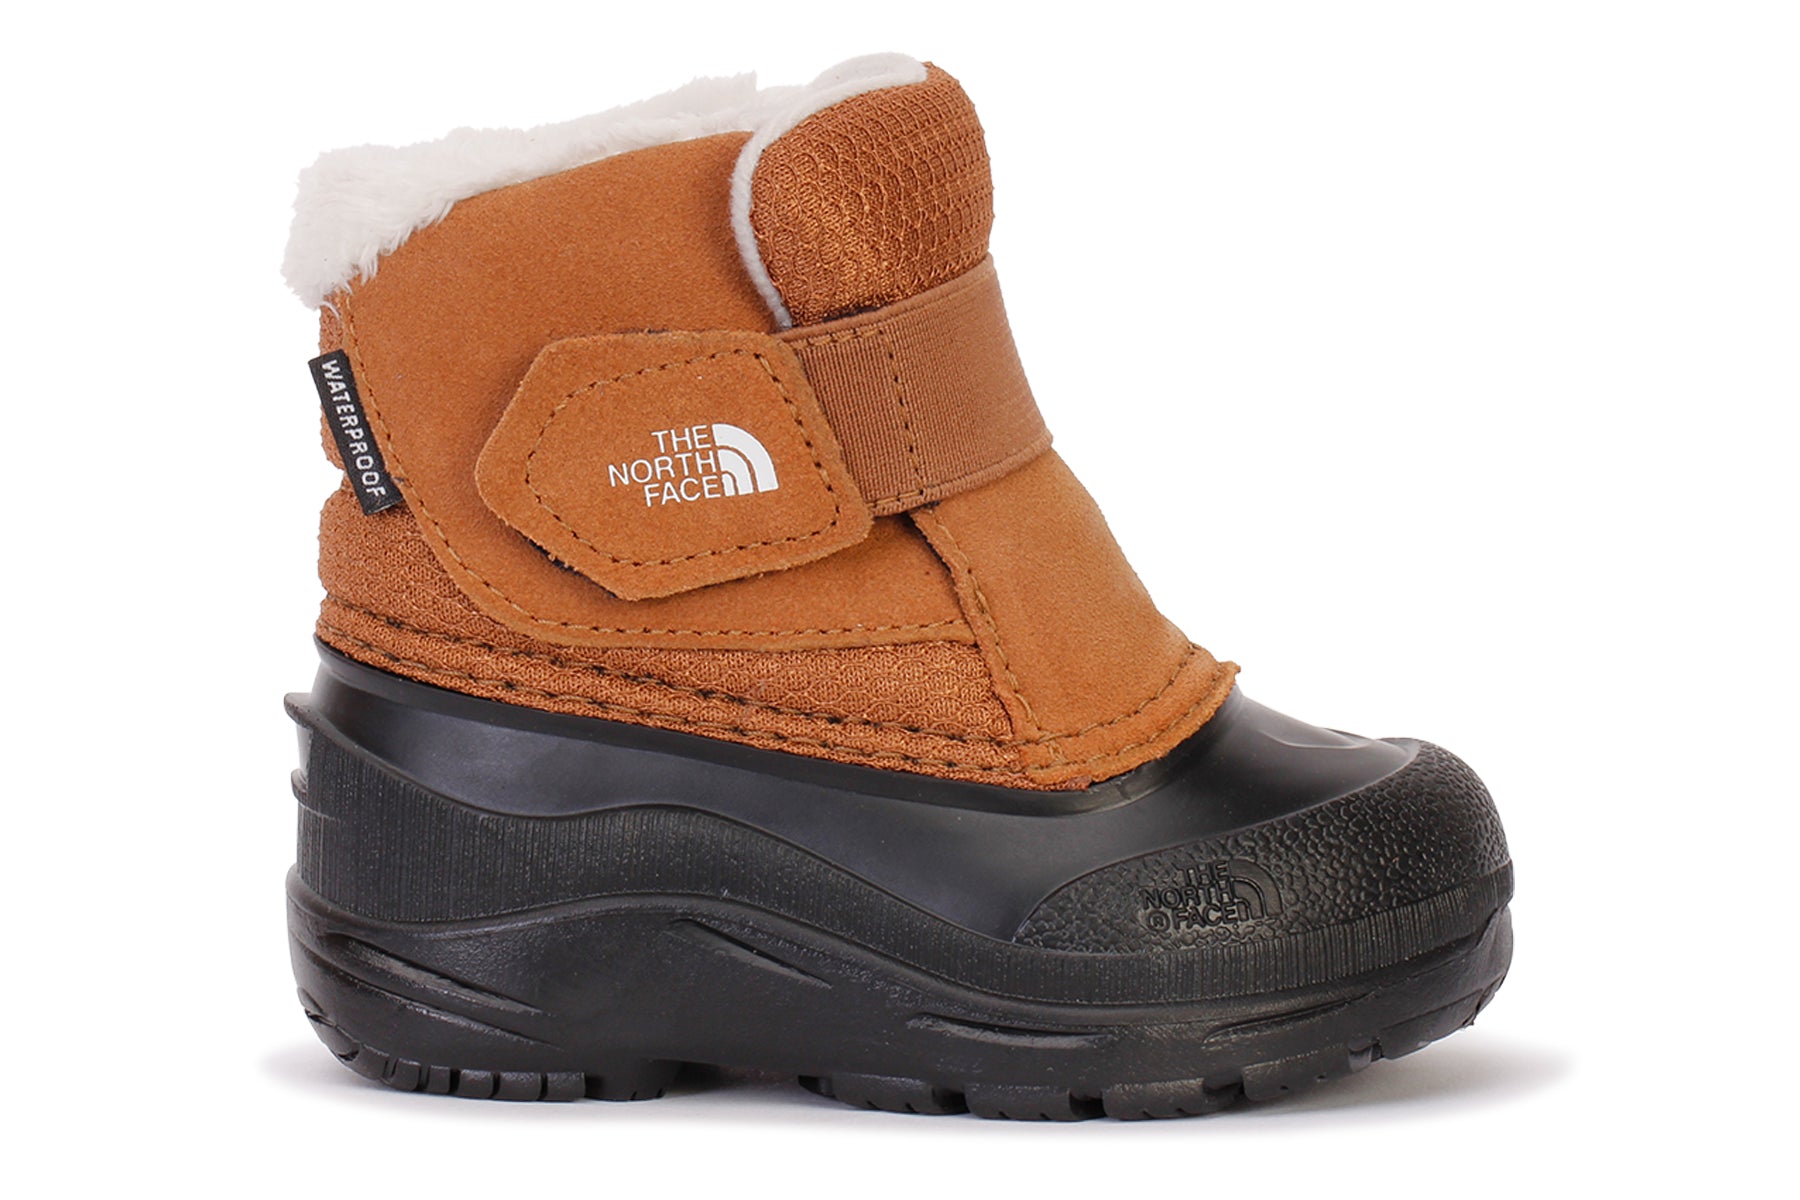 Toddler Alpenglow II Waterproof Boots